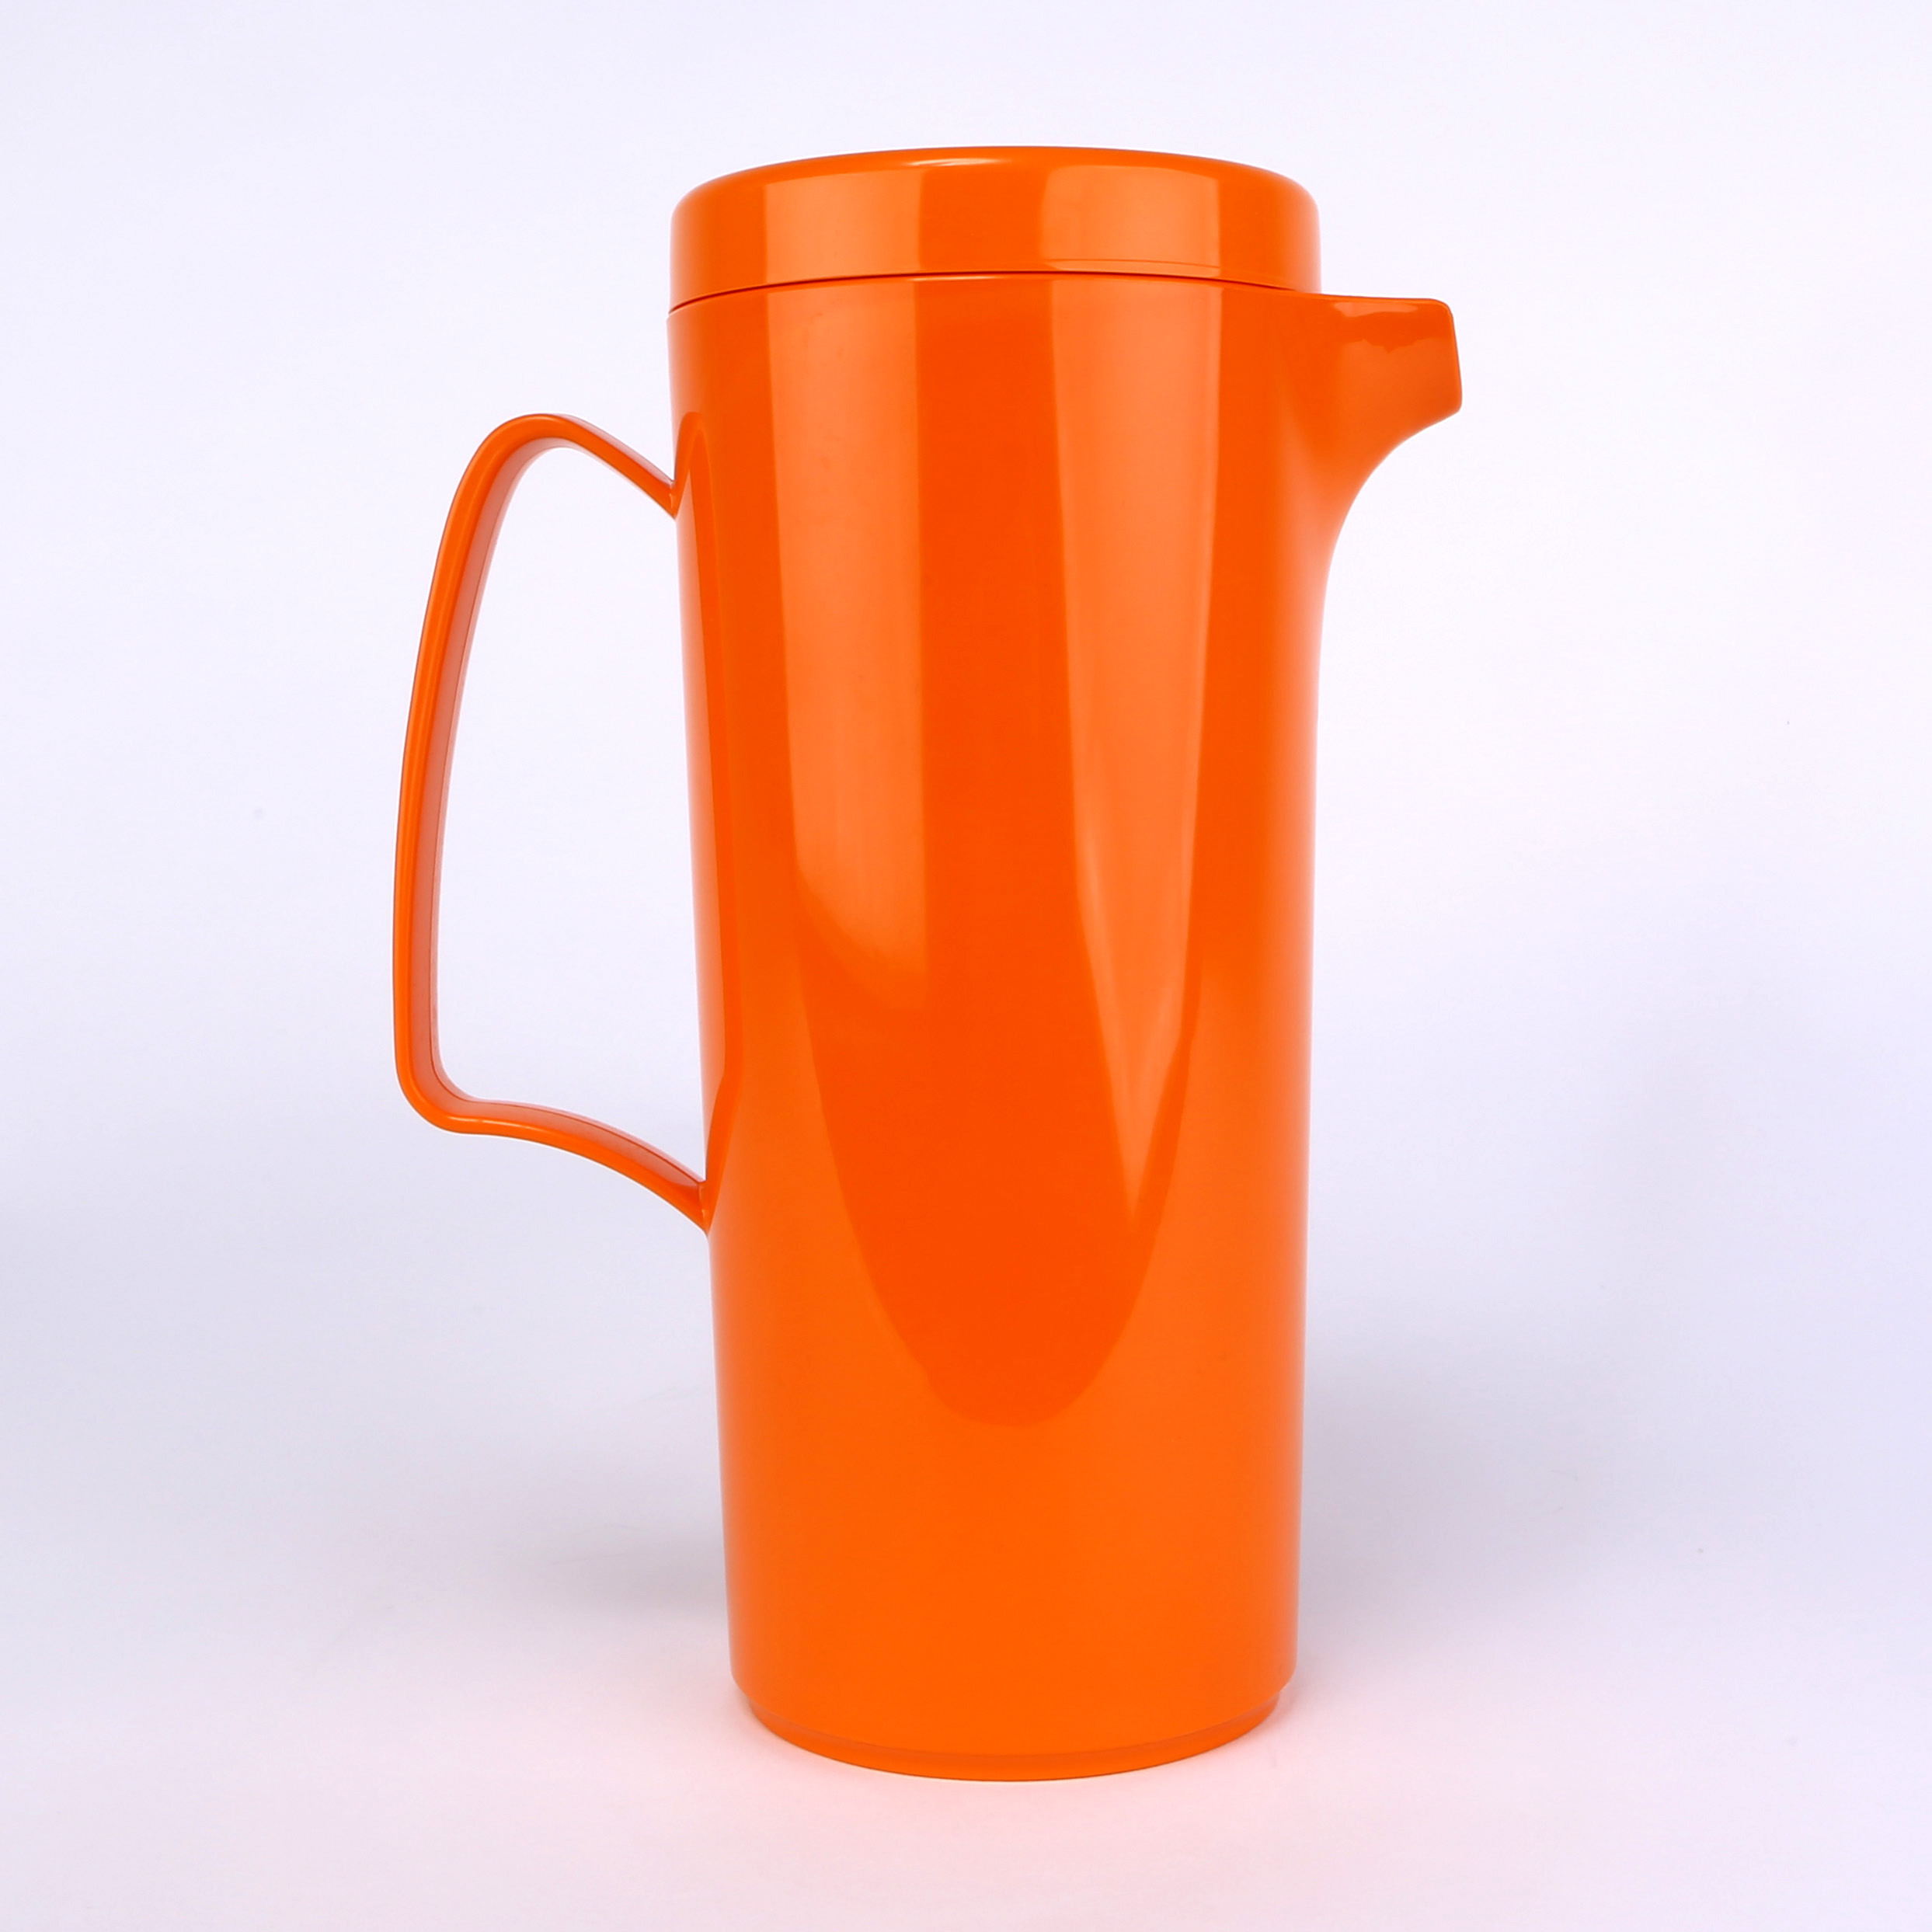 vaLon Zephyr Kanne 1 L mit Deckel aus schadstofffrei Kunststoff in der Farbe orange.